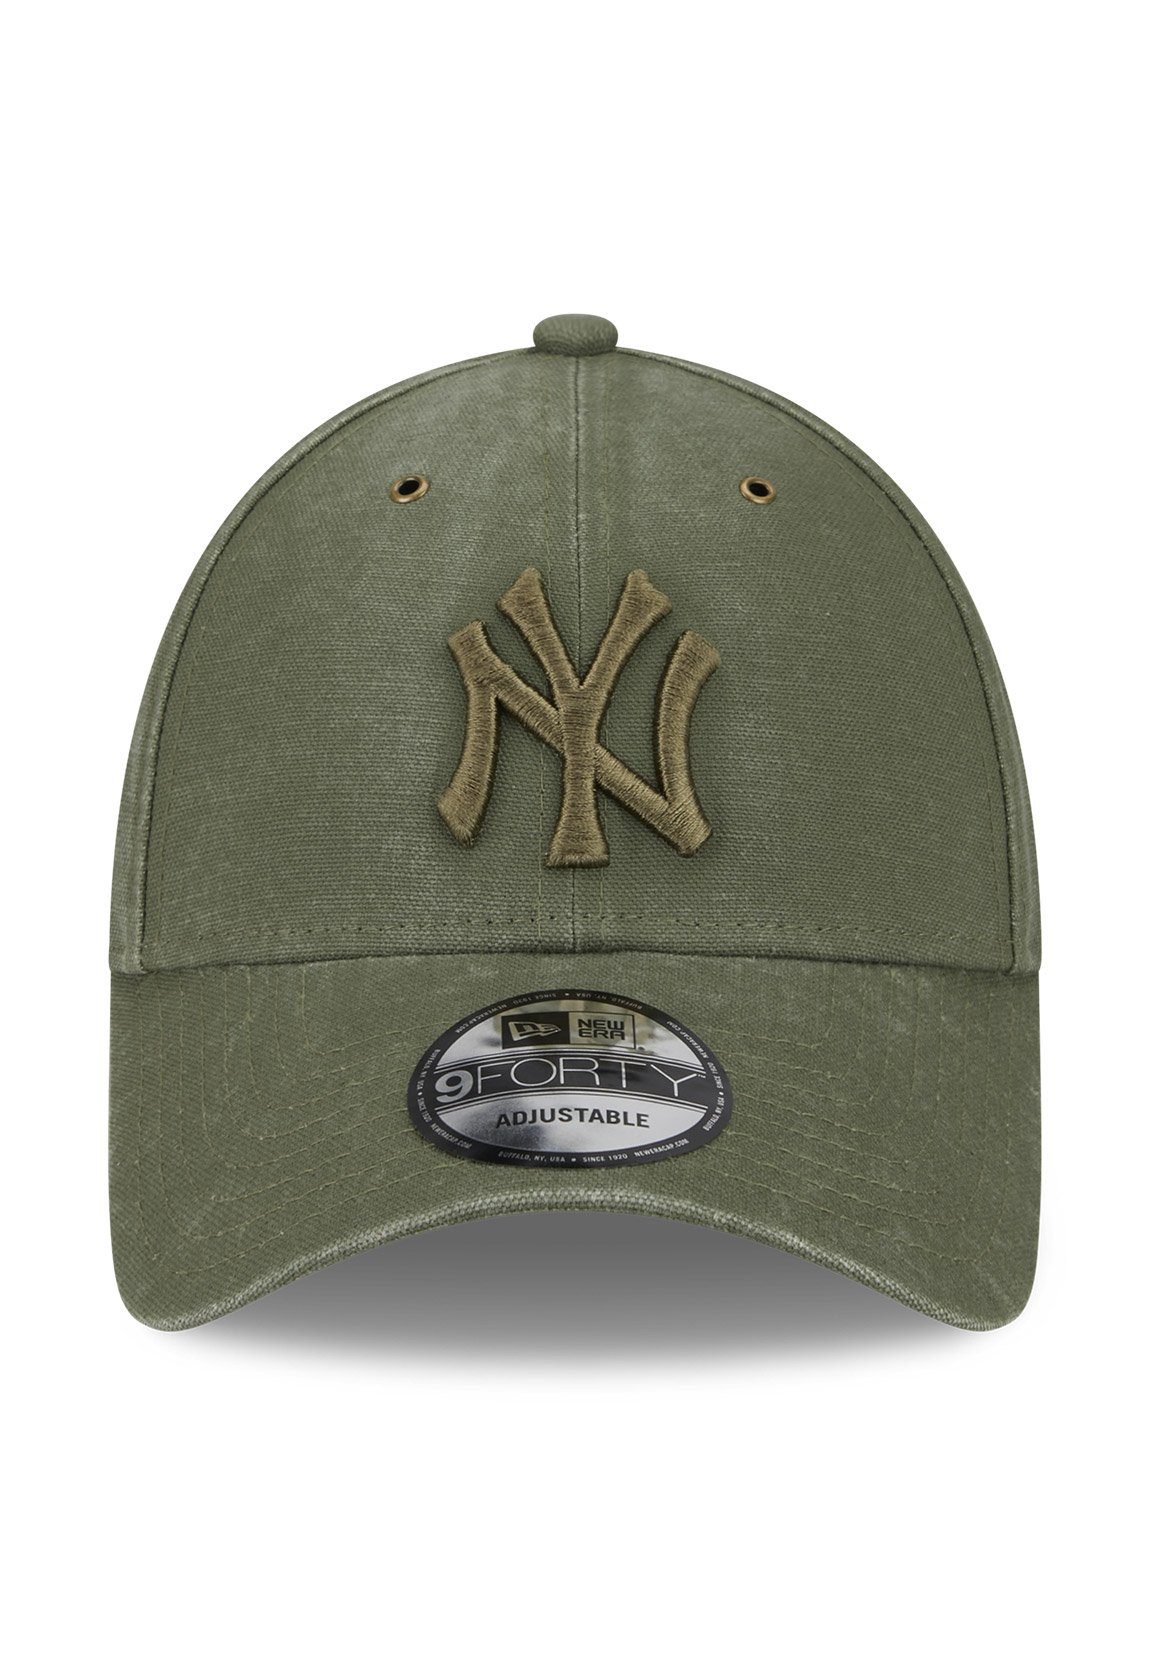 NY Cap New Baseball Khaki YANKEES 9Forty Adjustable Era Washed New Cap Canvas Era